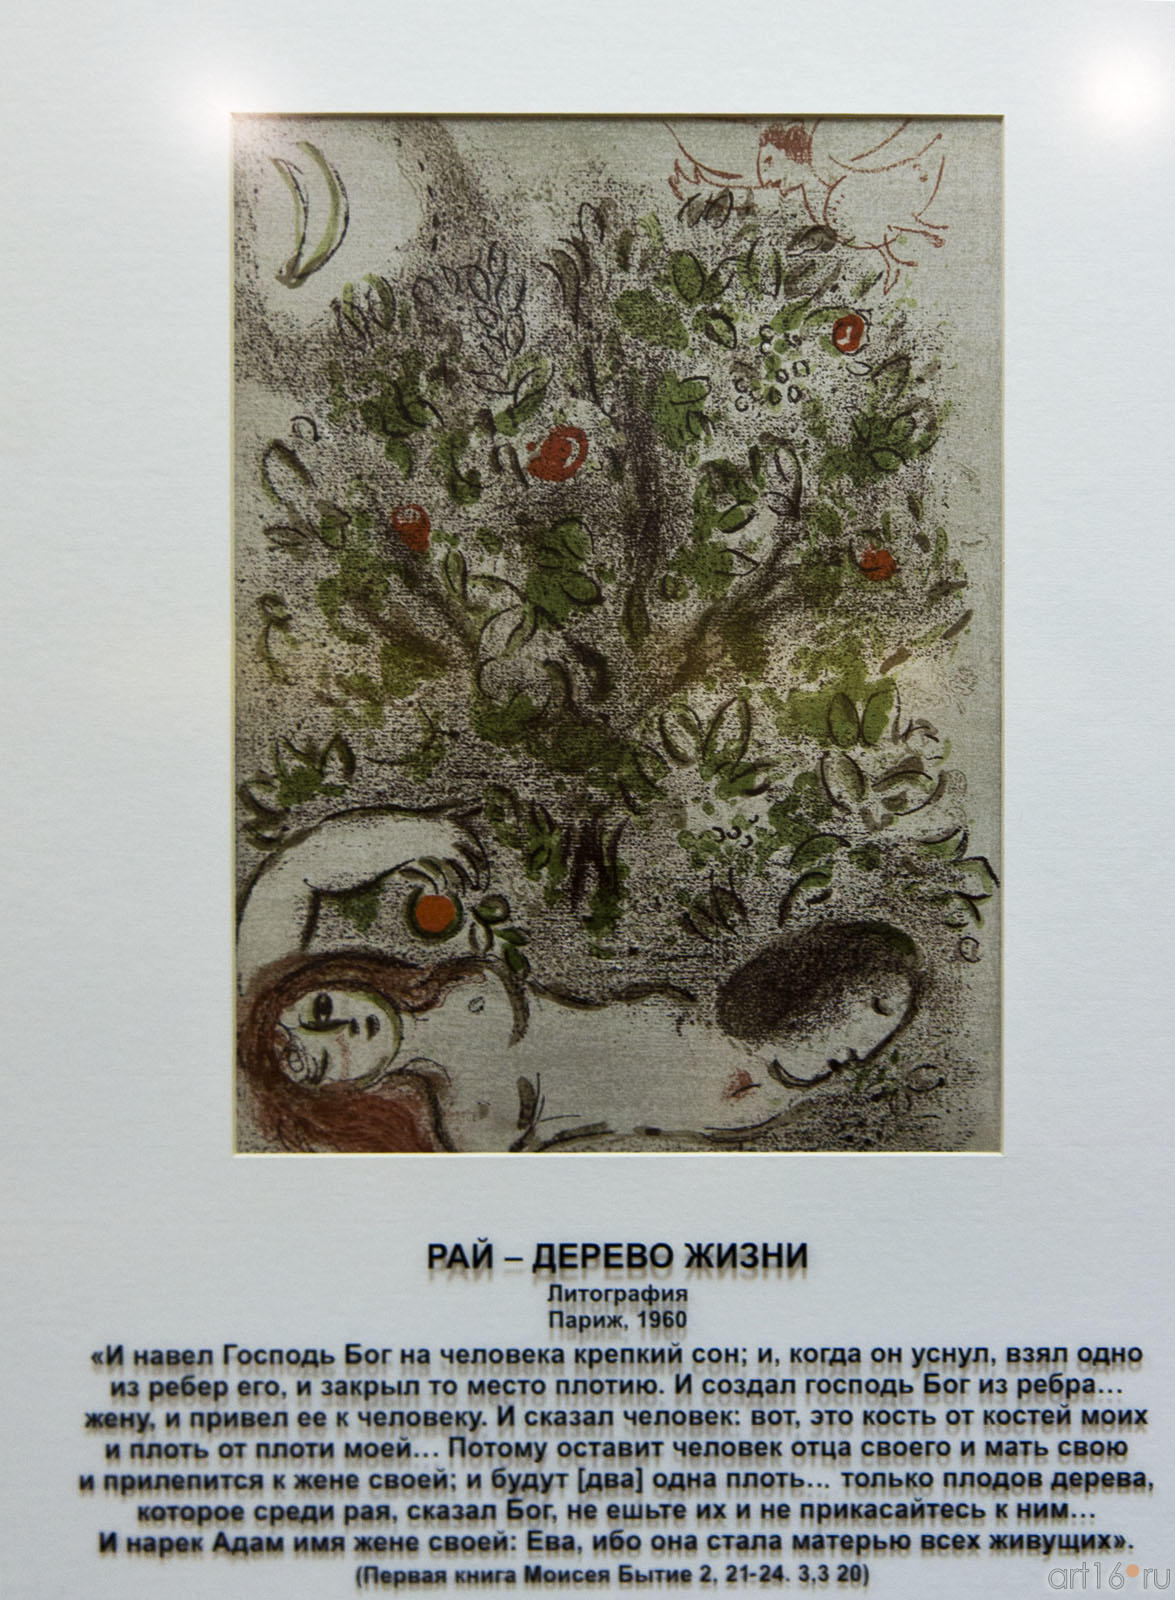 «Рай дерево жизни», Марк Шагал, литография, Париж, 1960::Марк Шагал «Библейские сюжеты»